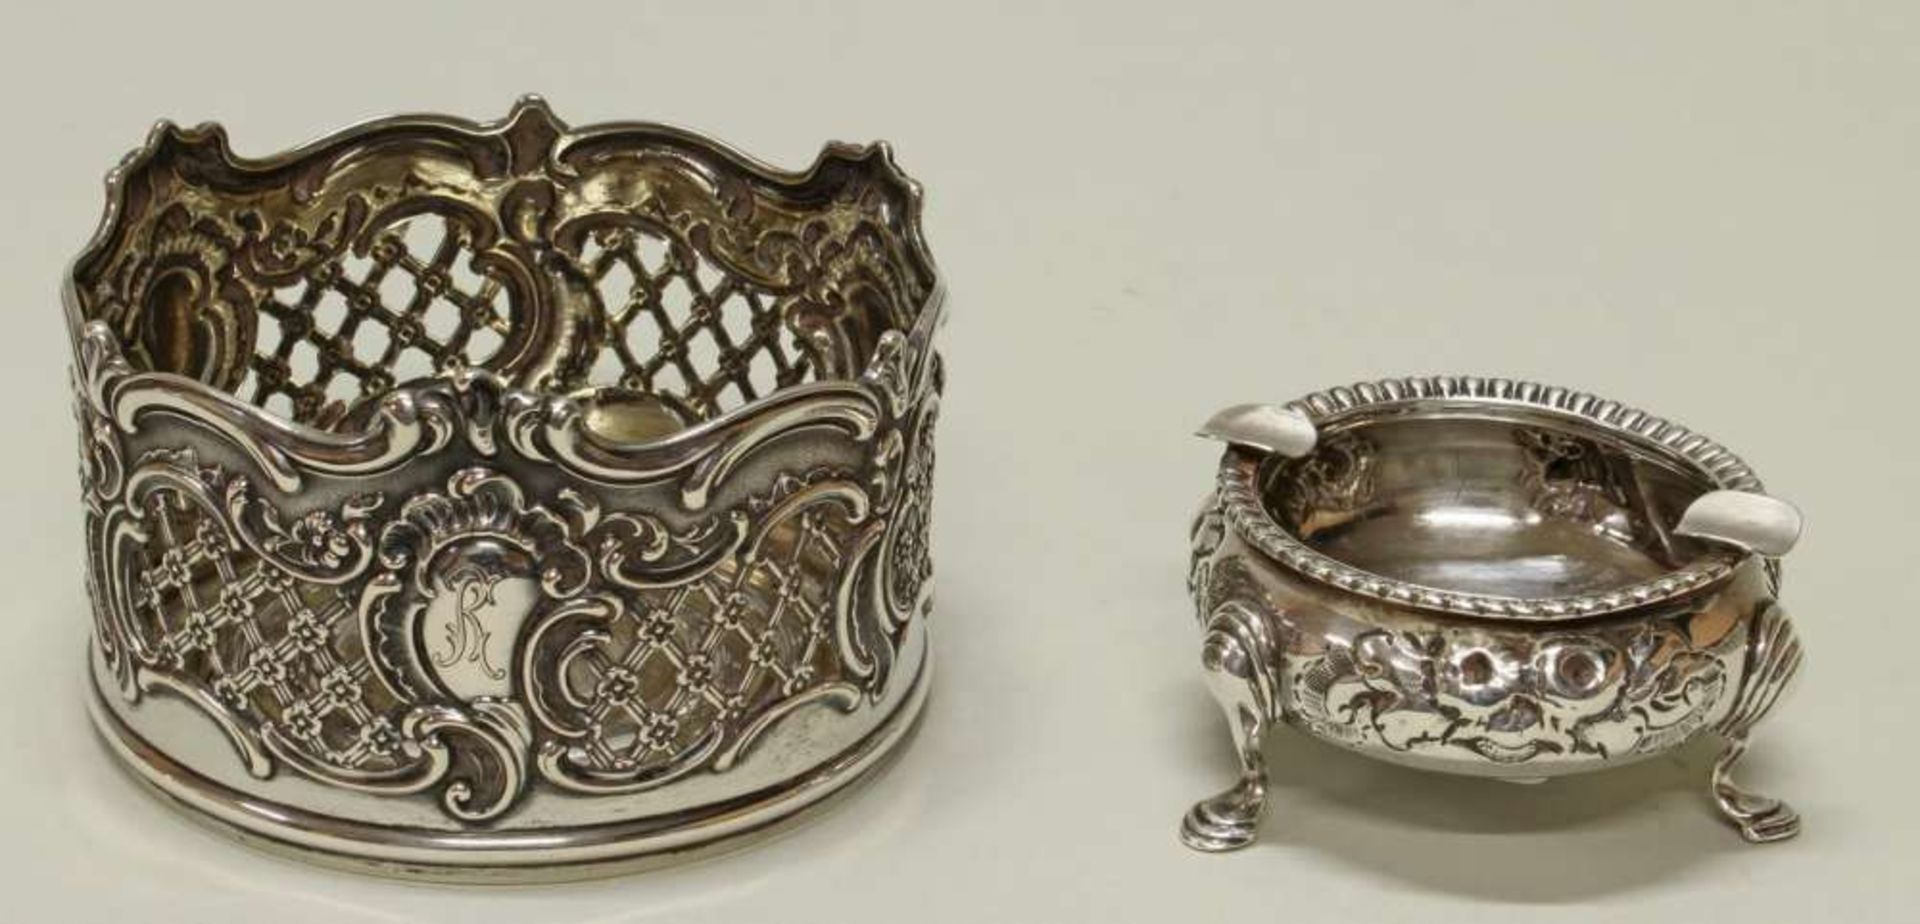 Reserve: 80 EUR        Aschenbecher, Silber 925, London, 1859, 3.5 cm hoch, ca. 72 g; - Image 2 of 2